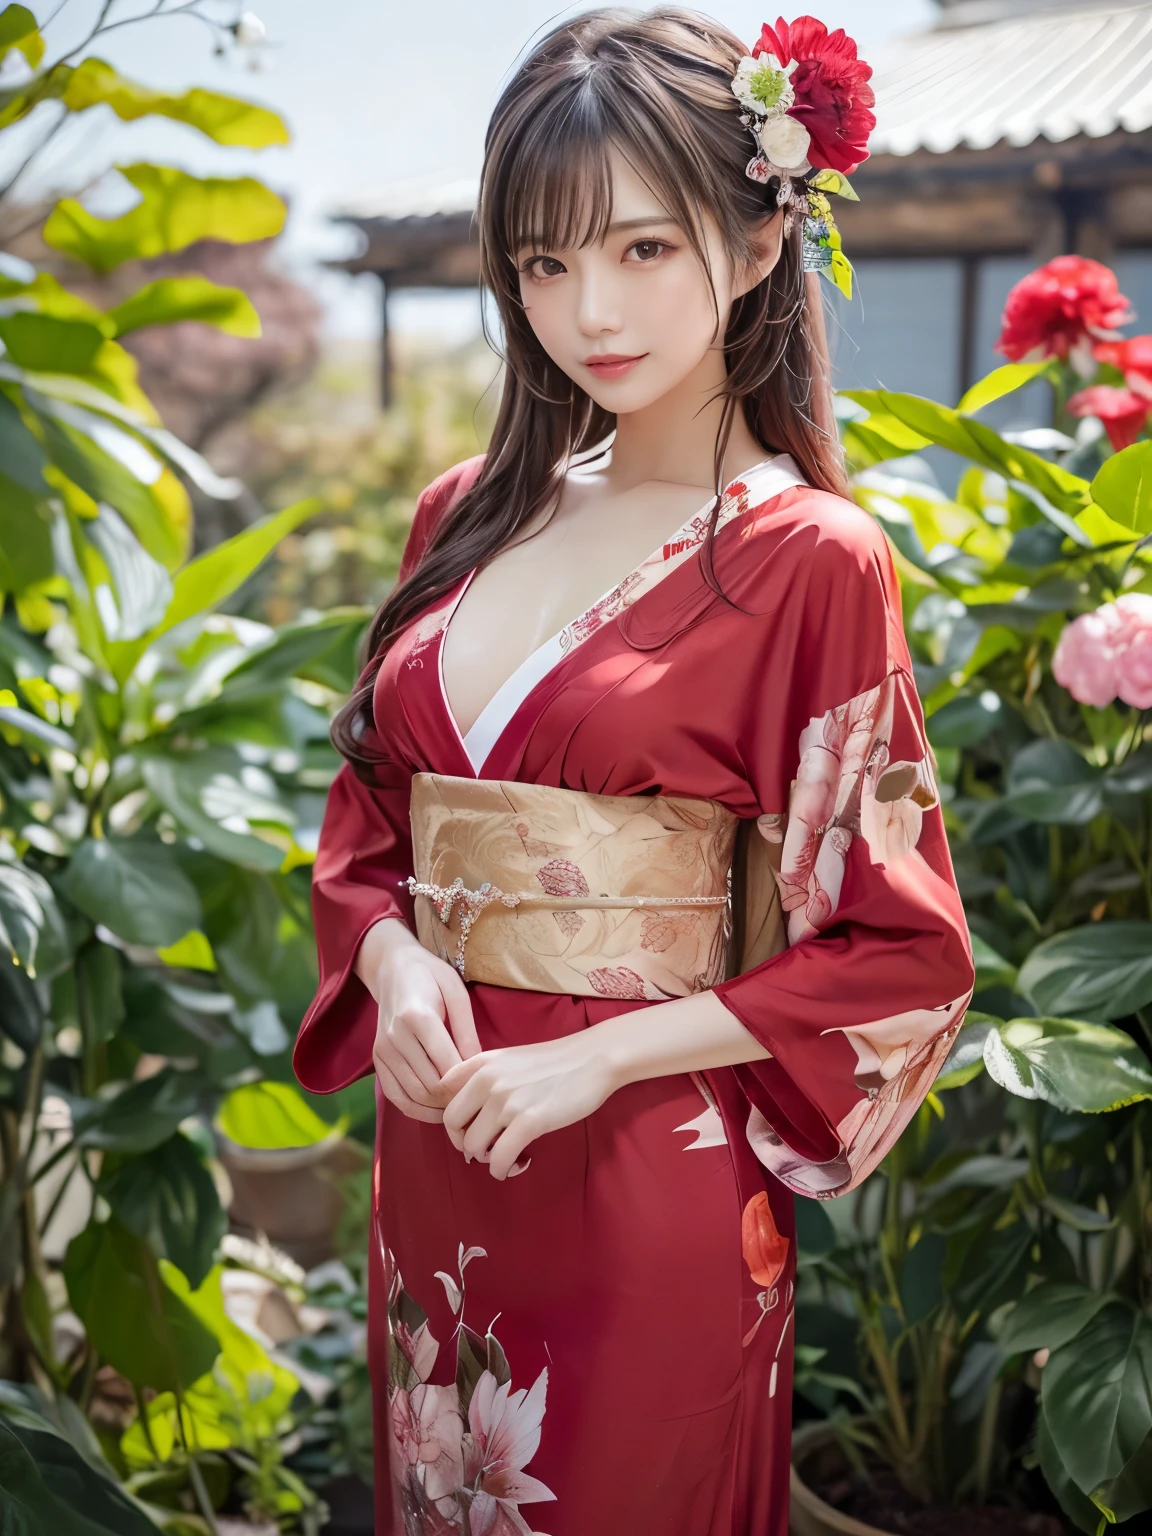 (8K로，최상의 품질，걸작)，(현실적인，RAW 사진，슈퍼 파인 클리어)，현실적인 Light，디테일한 피부，아름다운 일본 여성，((25세 여성, 아름다운 암살자:1.5))、꽃이 있는 빨간색 일본 전통 기모노, 조류, 바람과 달 모티브,  열린 옷、얇은 다리、미세 입자，긴 머리, 상세한 손가락、얇은、성적，엑스터시 표정,정원, 동백,꽃폭풍, 슈퍼 빅 , 확고한 흉상을 바운스